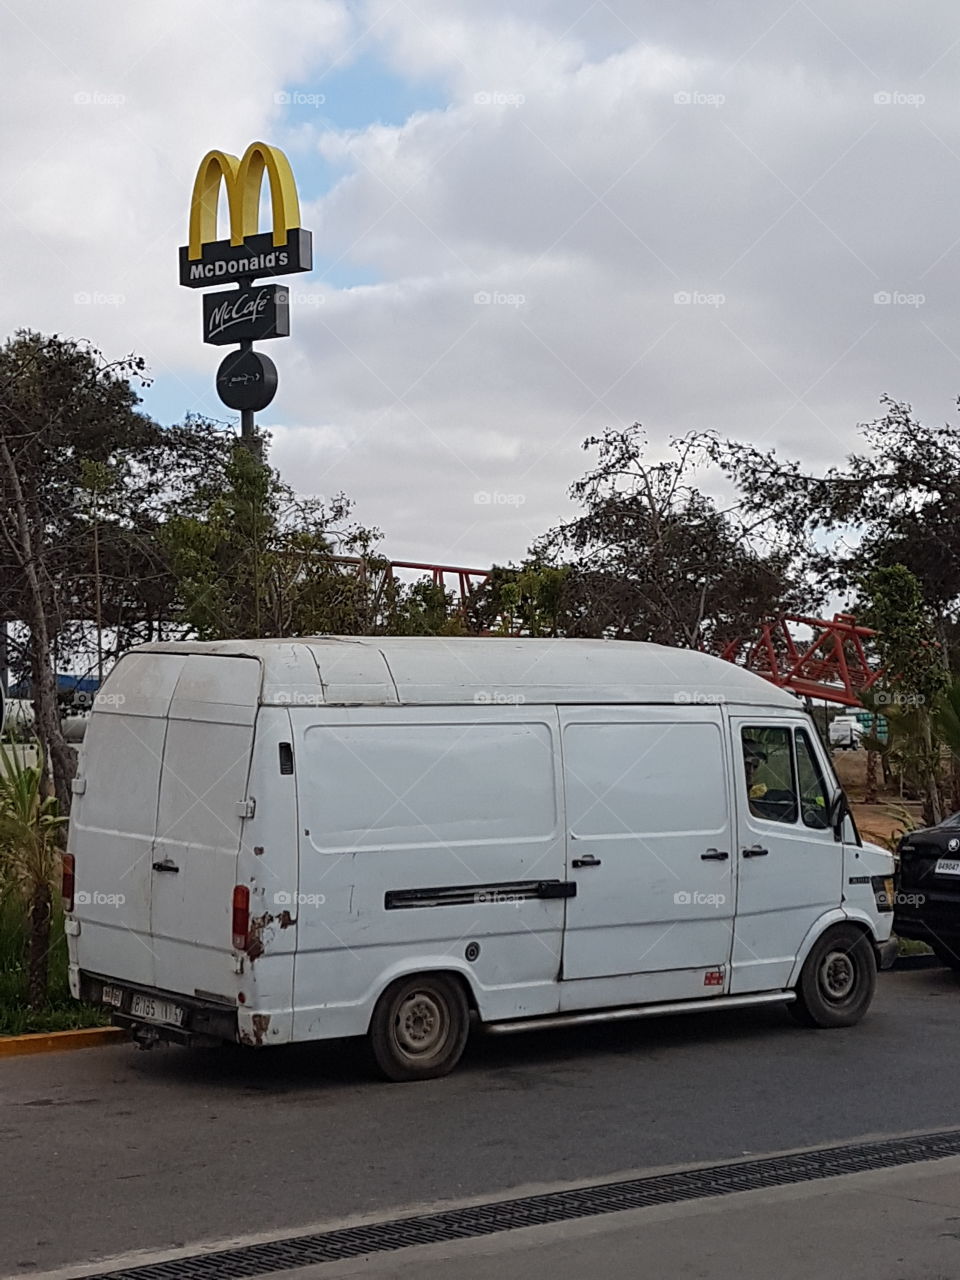 McDonalds McDonald's car